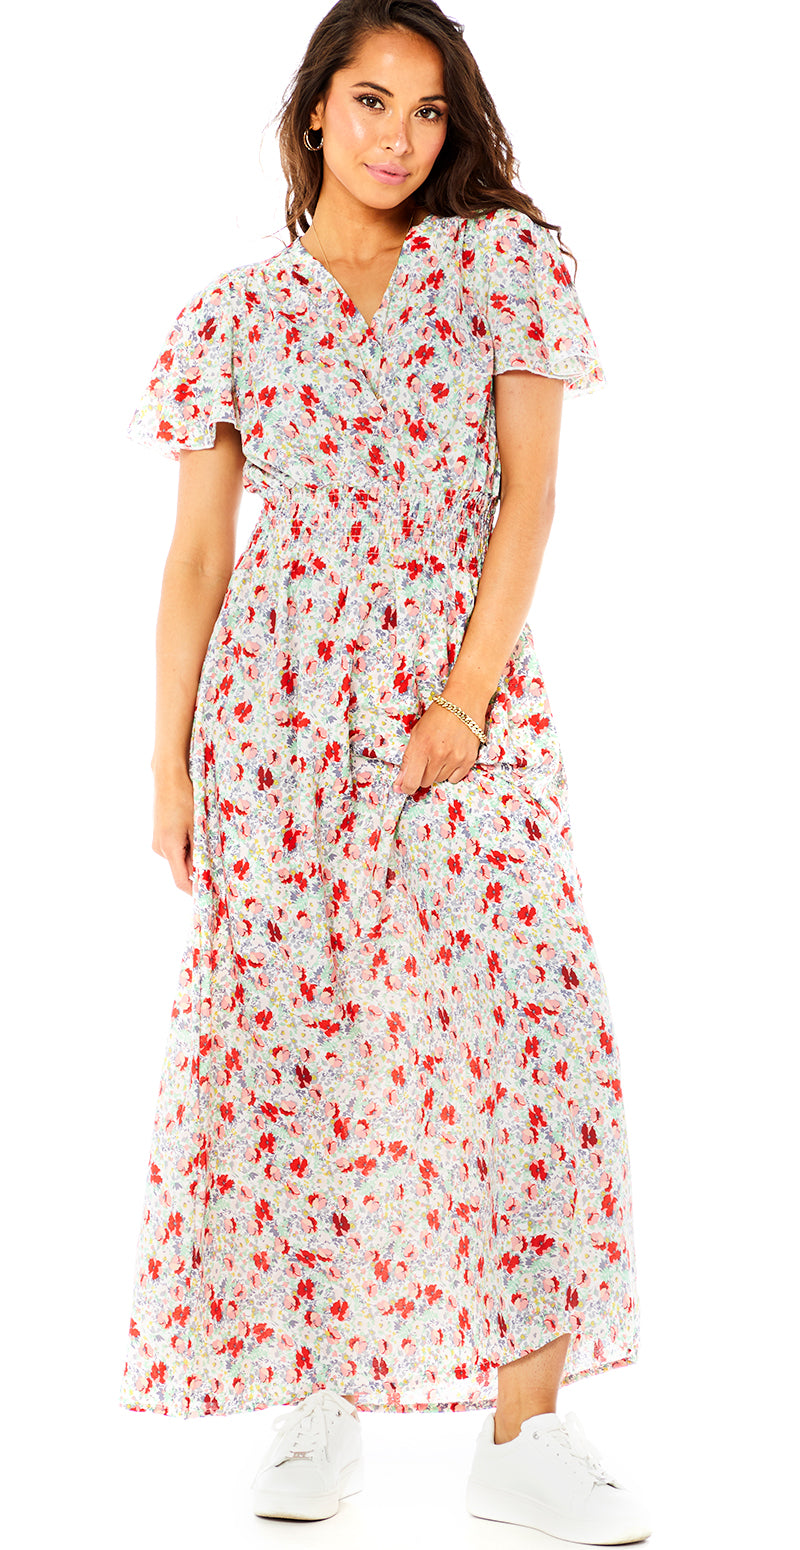 Lang blomstret kjole med v-hals og med flæser rød/hvid Likelondo – LikeLondon.com